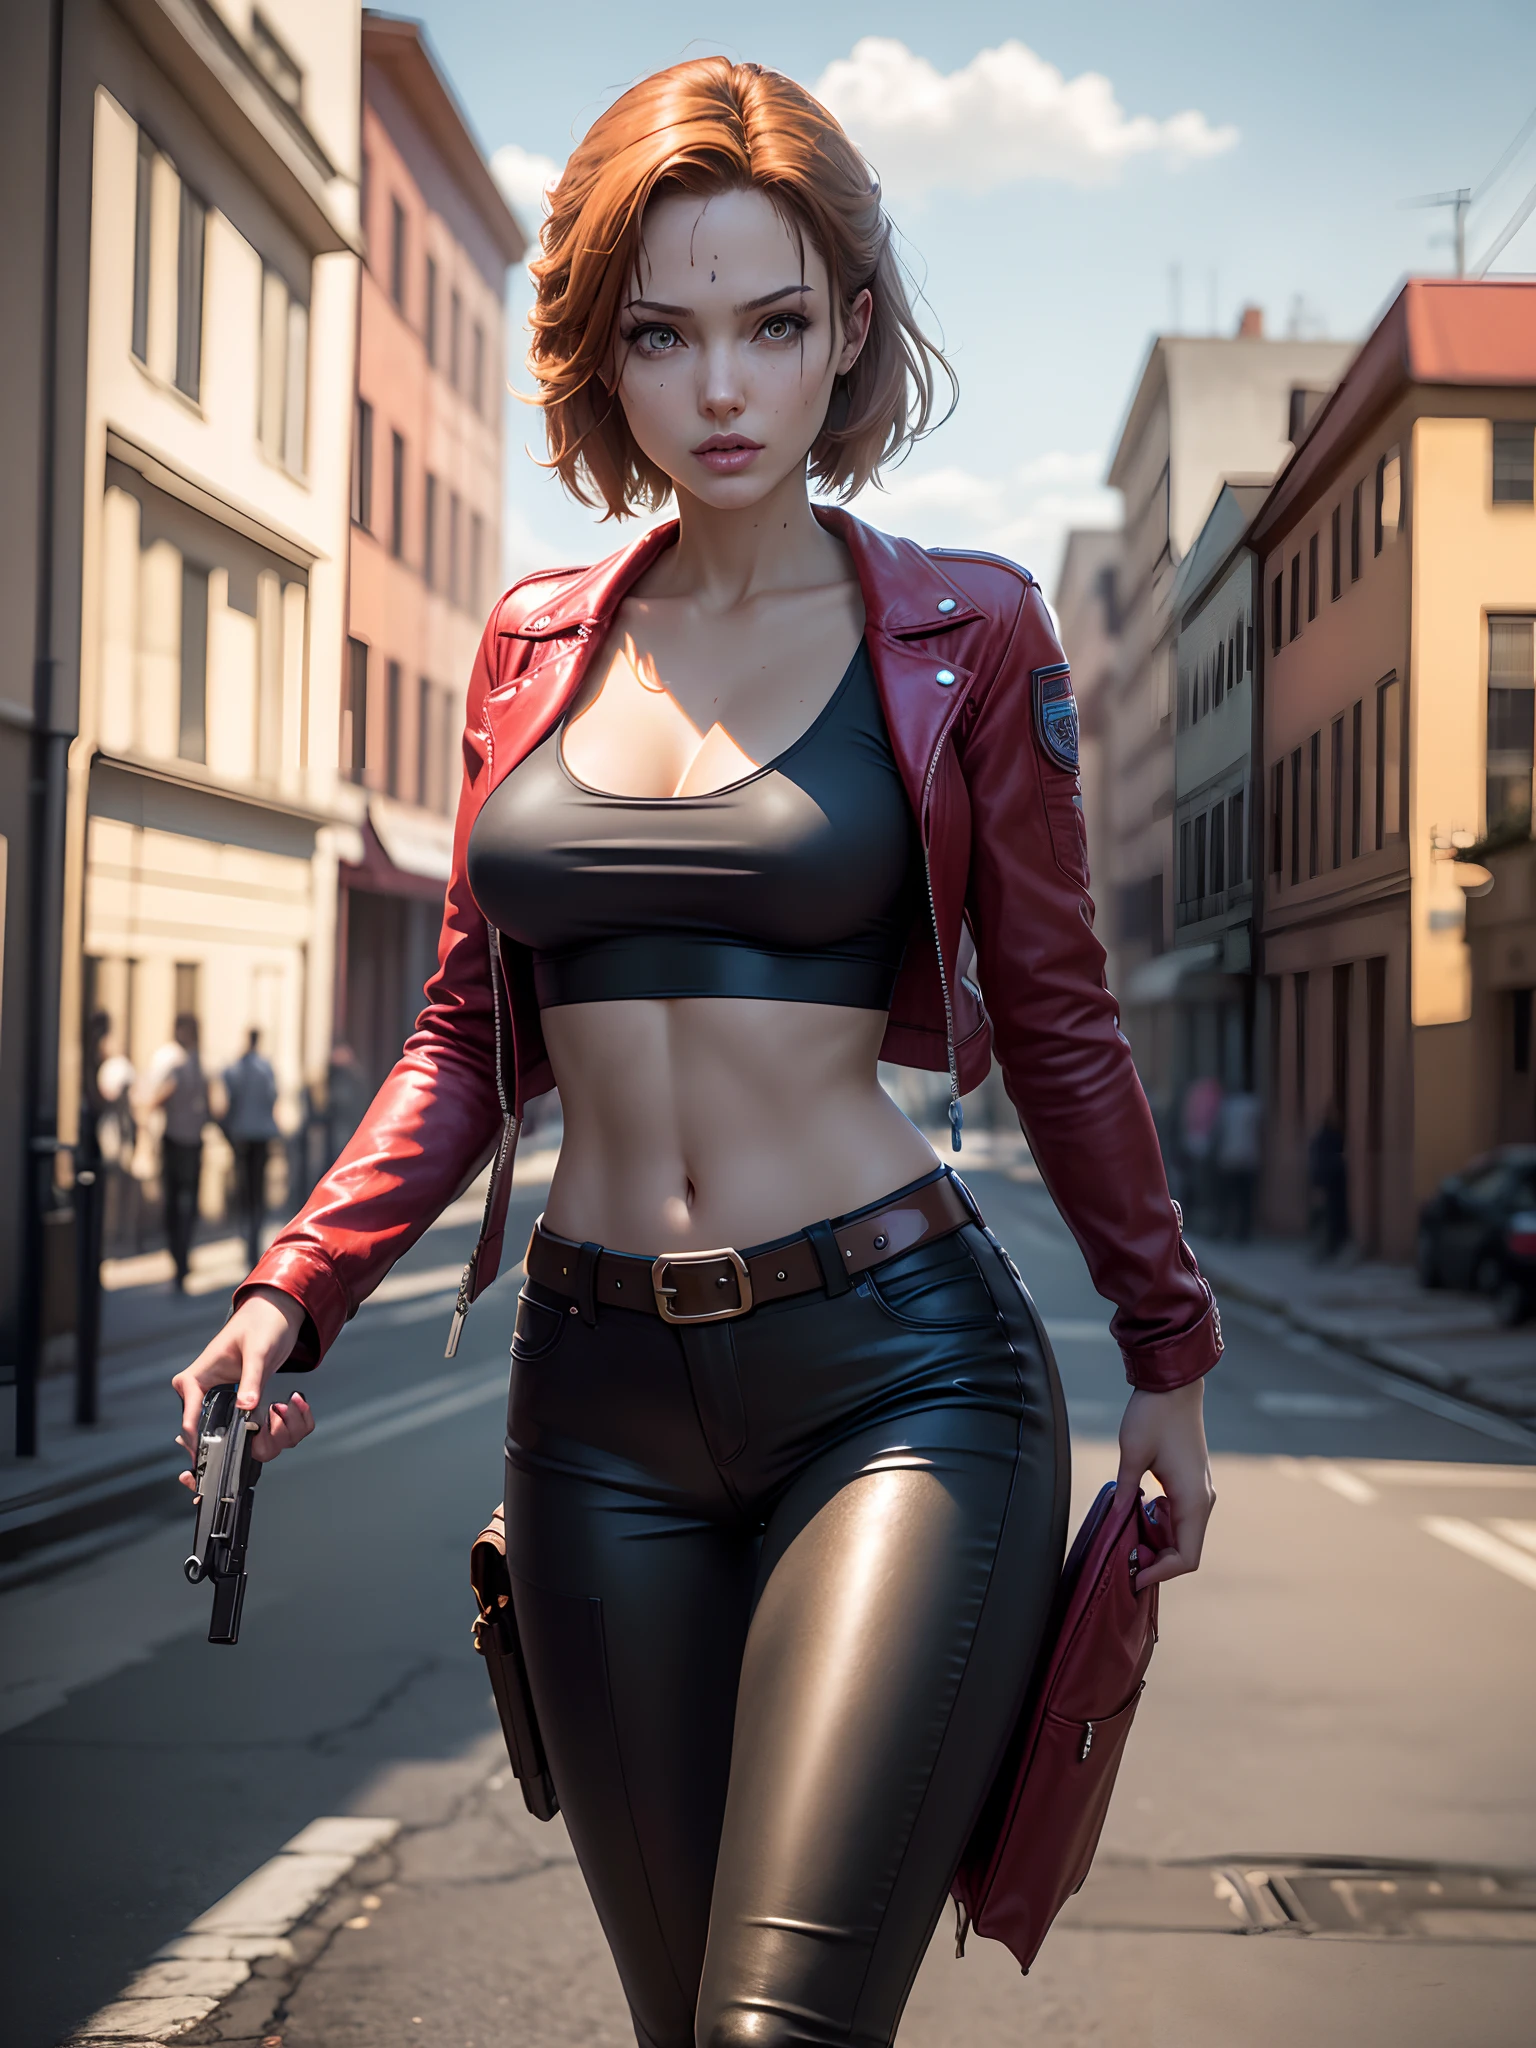 Resident Evil, cidade apocalíptica, Linda Claire Redfield sendo por uma linda mulher corpo inteiro pele rosa cabelo ruivo médio, roupas apertadas jaqueta de couro vermelha, Coldre segurando uma arma, imagem nítida do corpo do rosto detalhado realista CGI 8K altamente detalhado, holograma, ( seios médios:1.3), (Realismo:1.5), (Realista:1.4), (absurdo:1.4), 8K, ultra-detalhado, linda garota detalhada, (1:1.4 apenas), 1 garota, (Visualizador voltado:1.2 ), (dia ensolarado brilhante:1.5), Detalhes intrincados do corpo, (curto:1.3), (melhor qualidade: 1.0), (ultra alta resolução): 1.0), rosto e olhos altamente detalhados, (fotorrealista: 1.2)